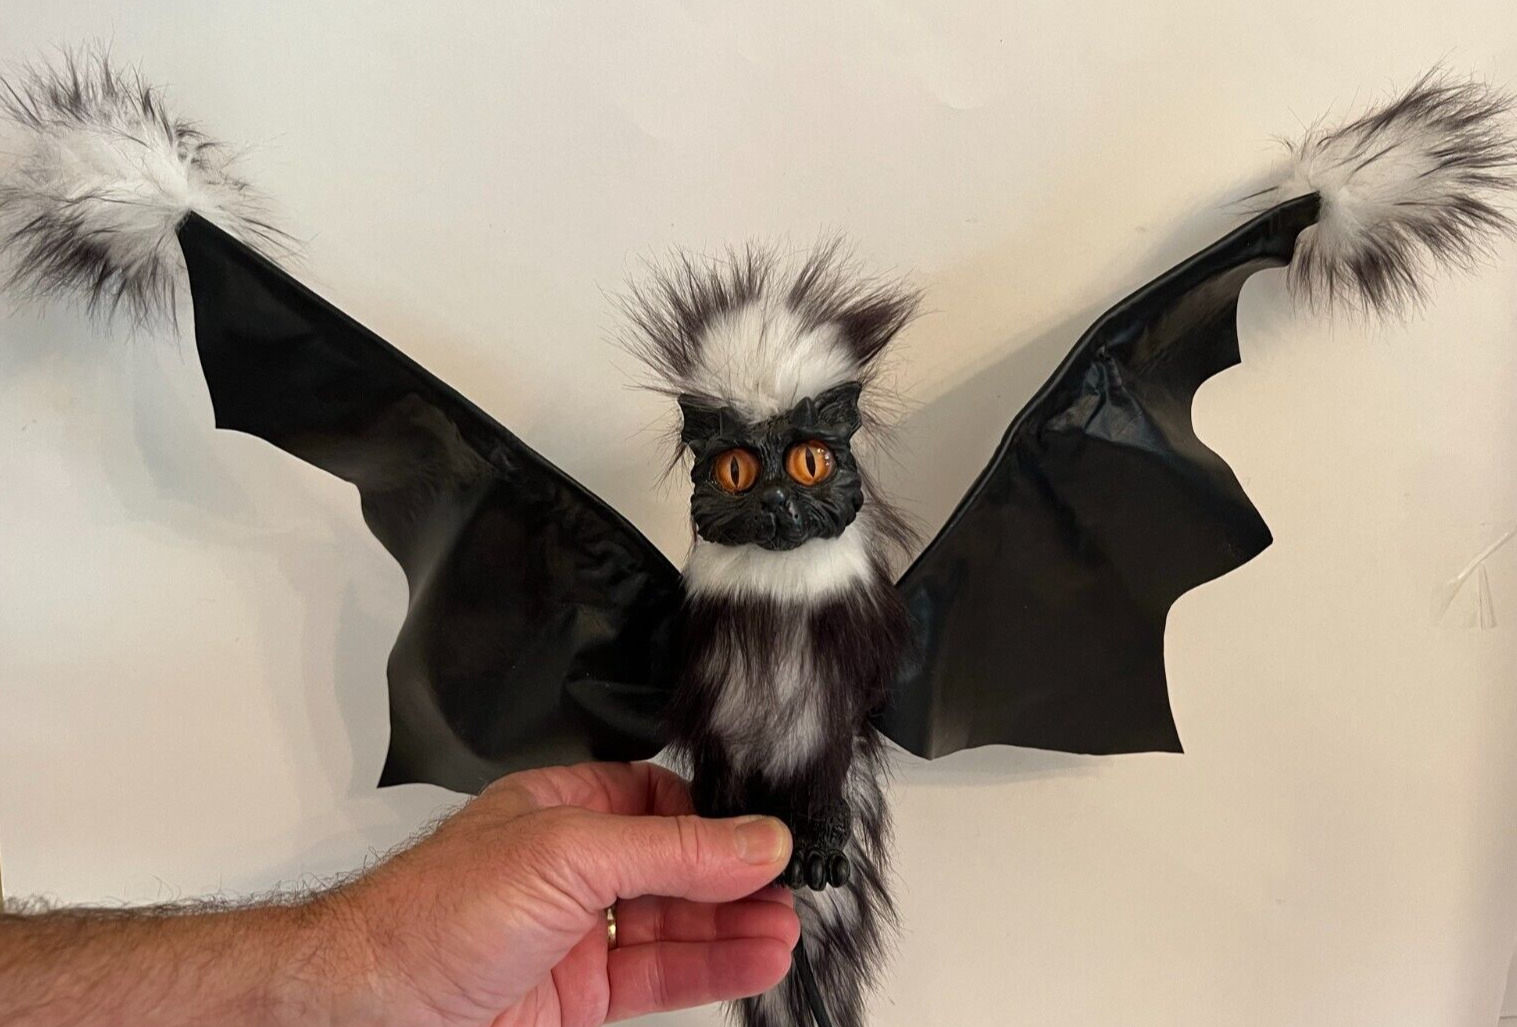 DRABBIT Winged Bat CABLE PUPPET by Albert Alfaro / Imaginarium Black White 